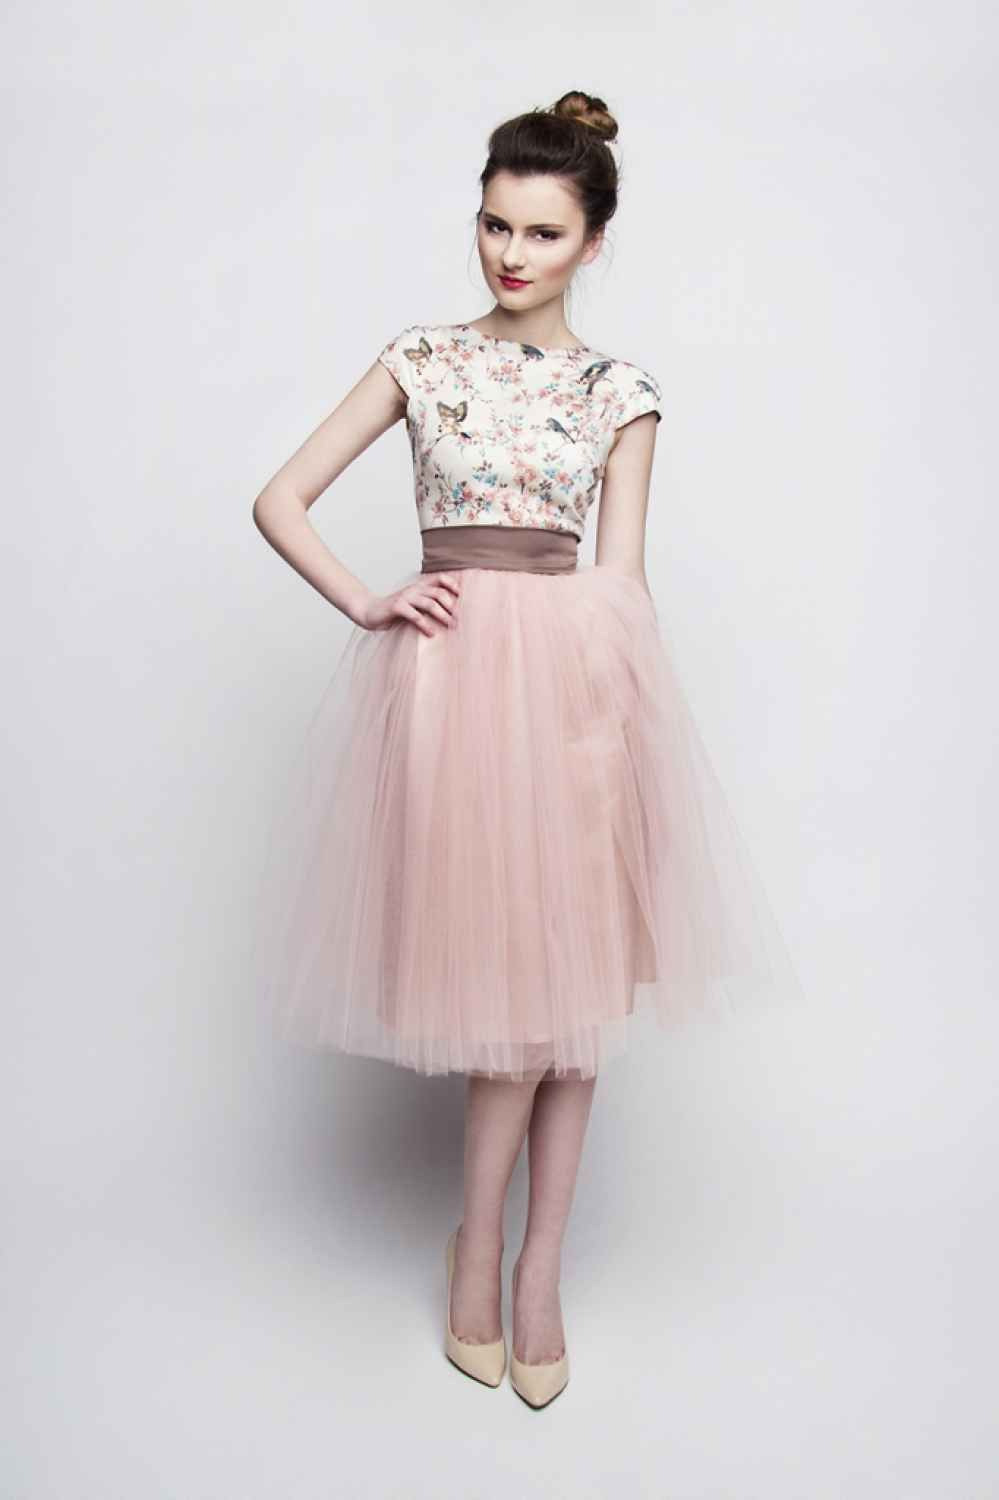 Luxurius Festliches Kleid Rosa Stylish17 Cool Festliches Kleid Rosa Galerie